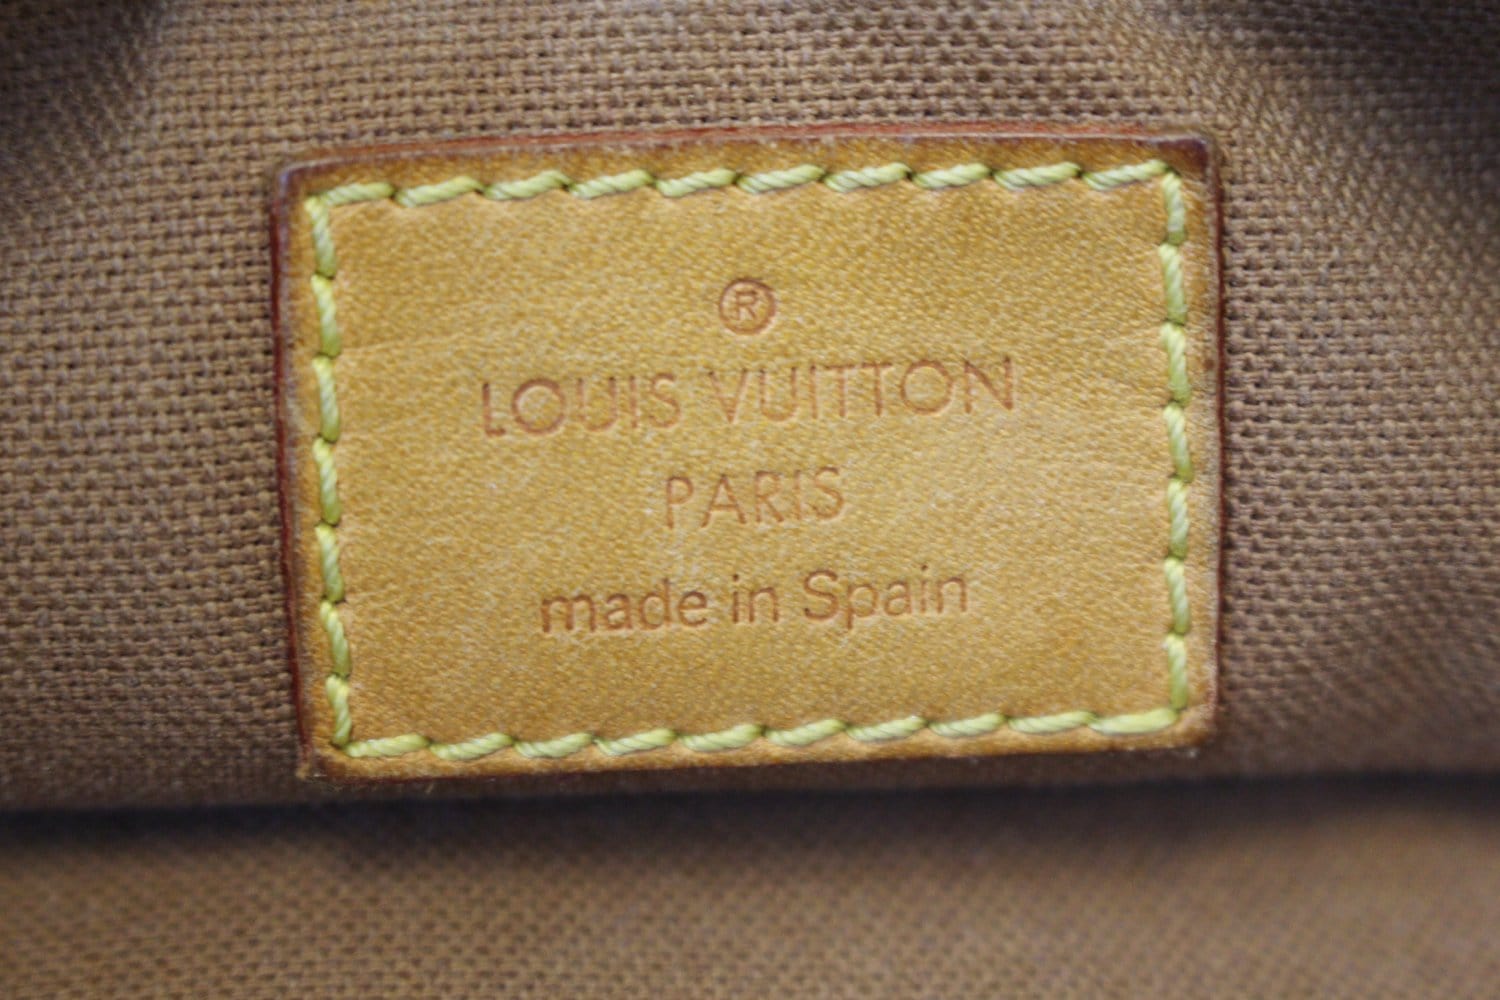 Sold at Auction: Louis Vuitton, LOUIS VUITTON, MONOGRAM CANVAS TULUM  SHOULDER BAG, RUBBERIZED COTTON CANVAS IN CLASSIC LOGO PRINT